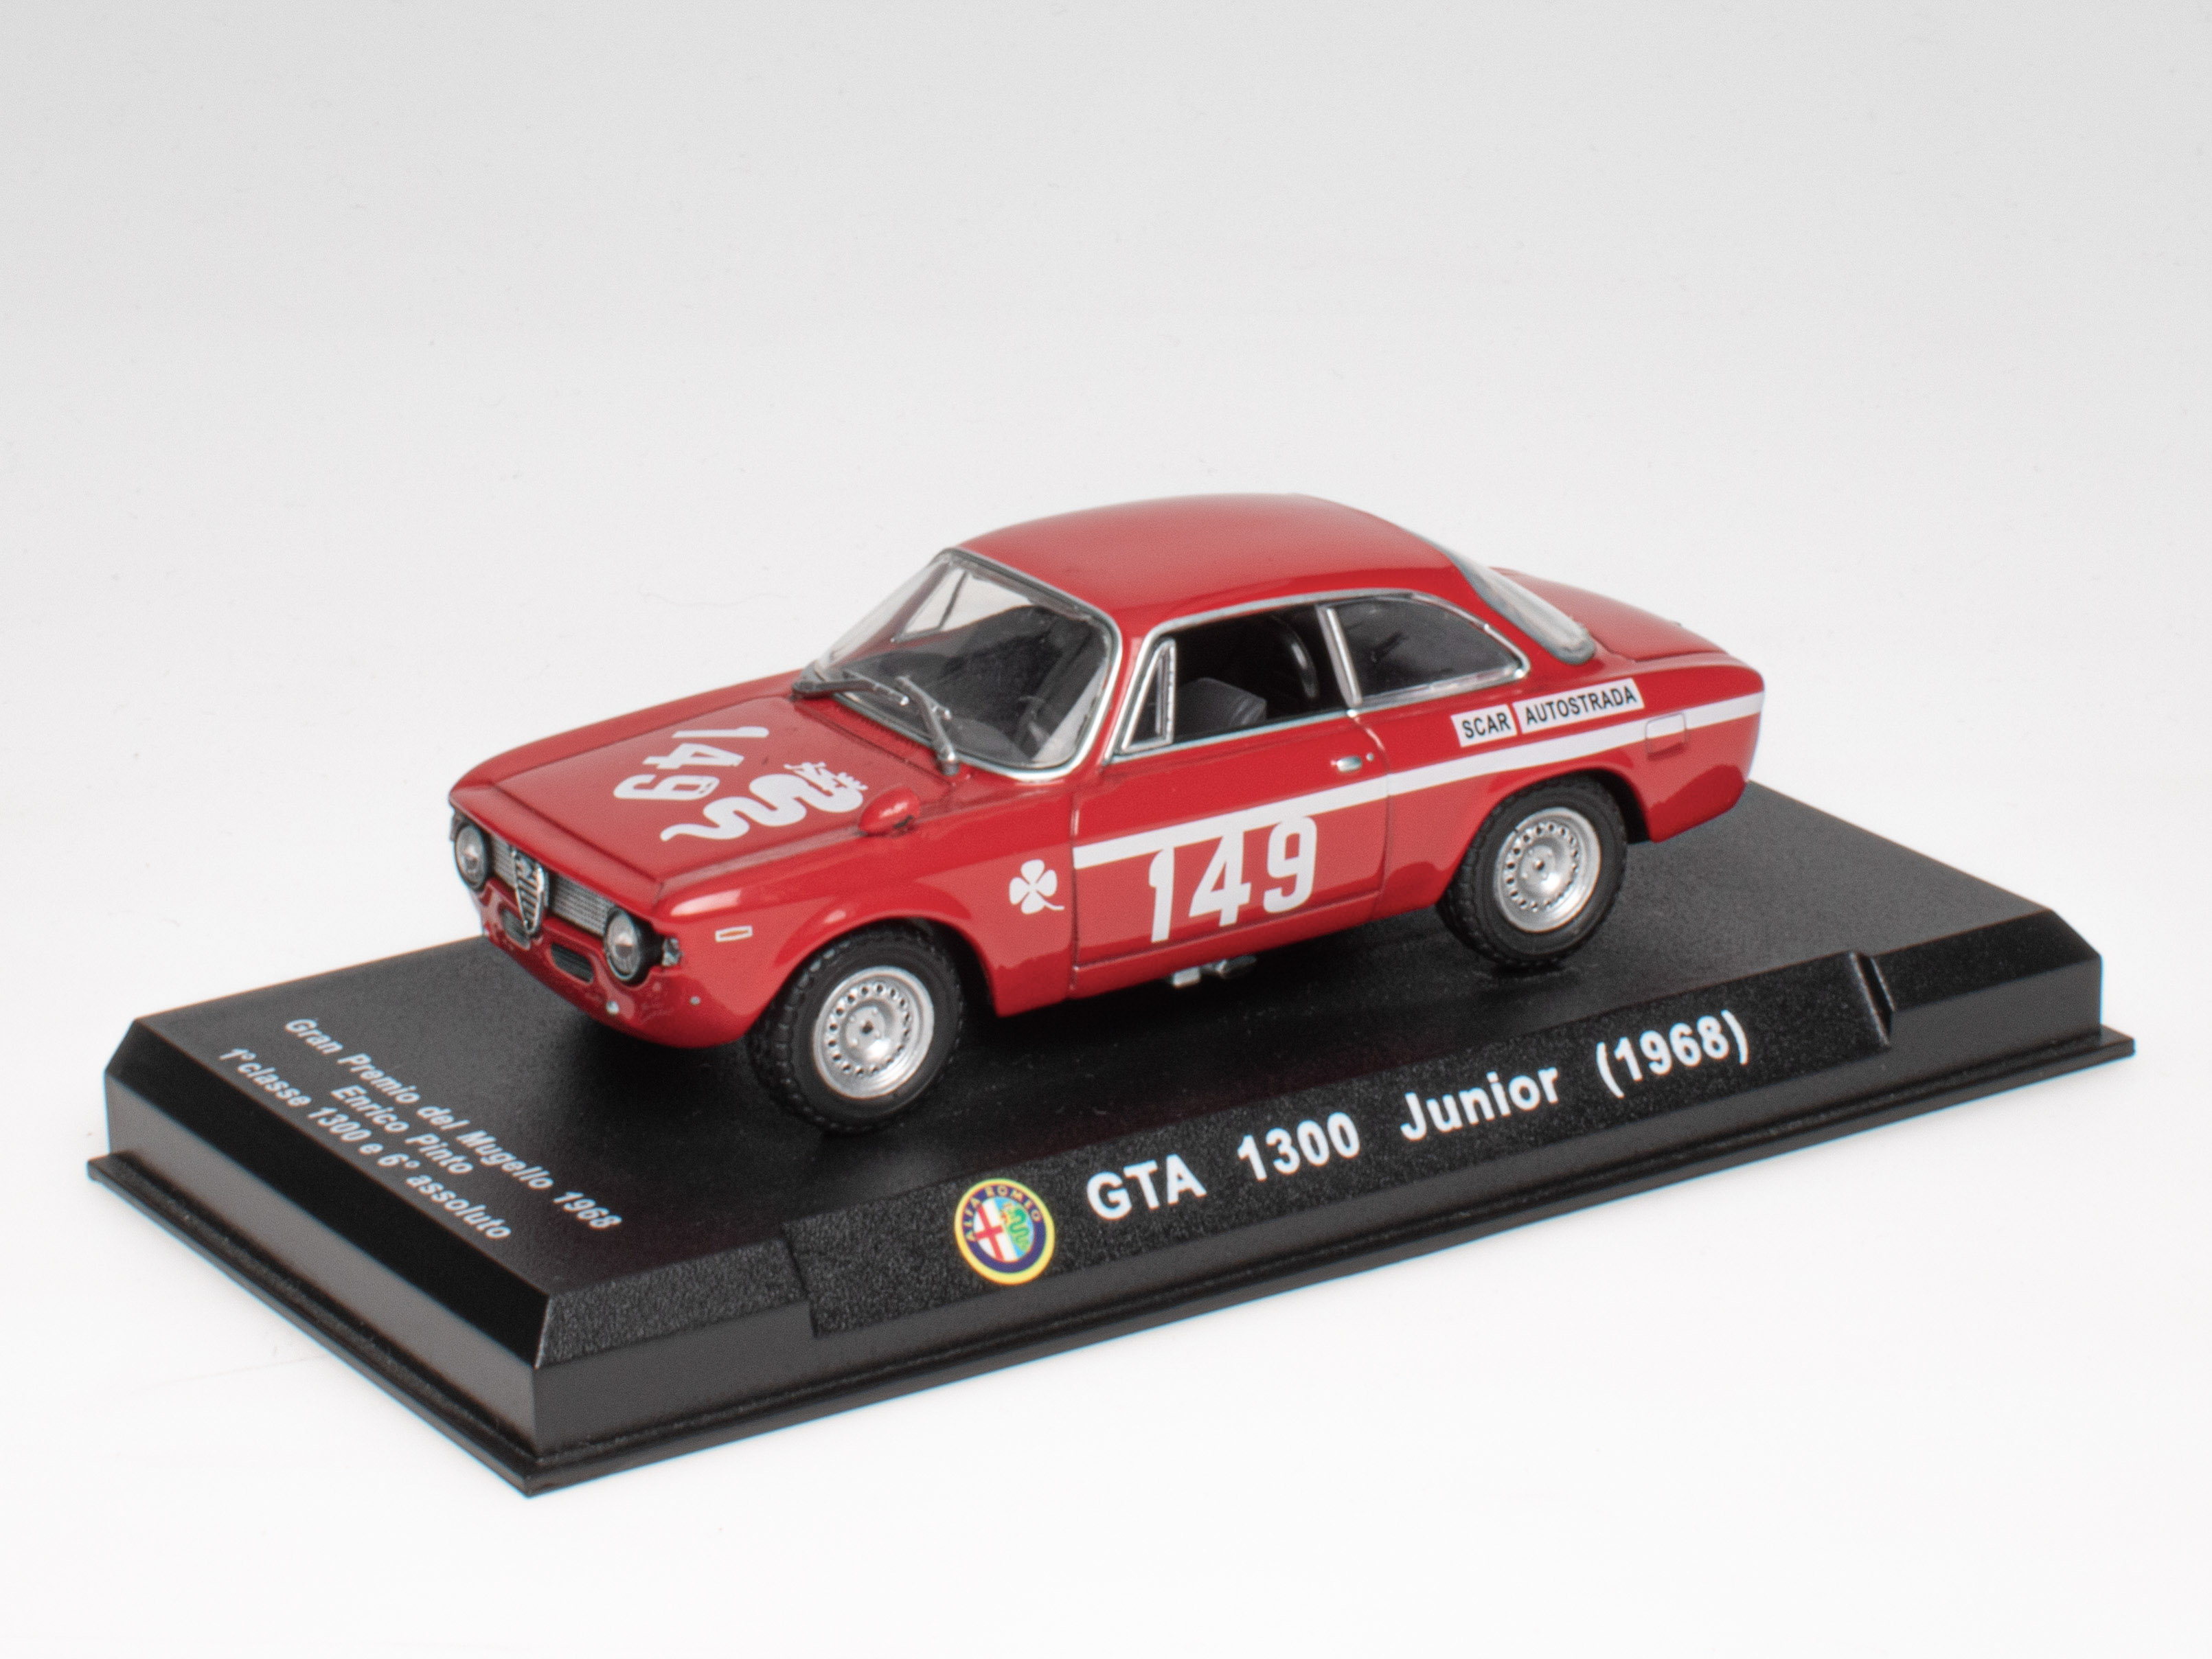 Alfa Romeo GTA 1300 junior - 1968